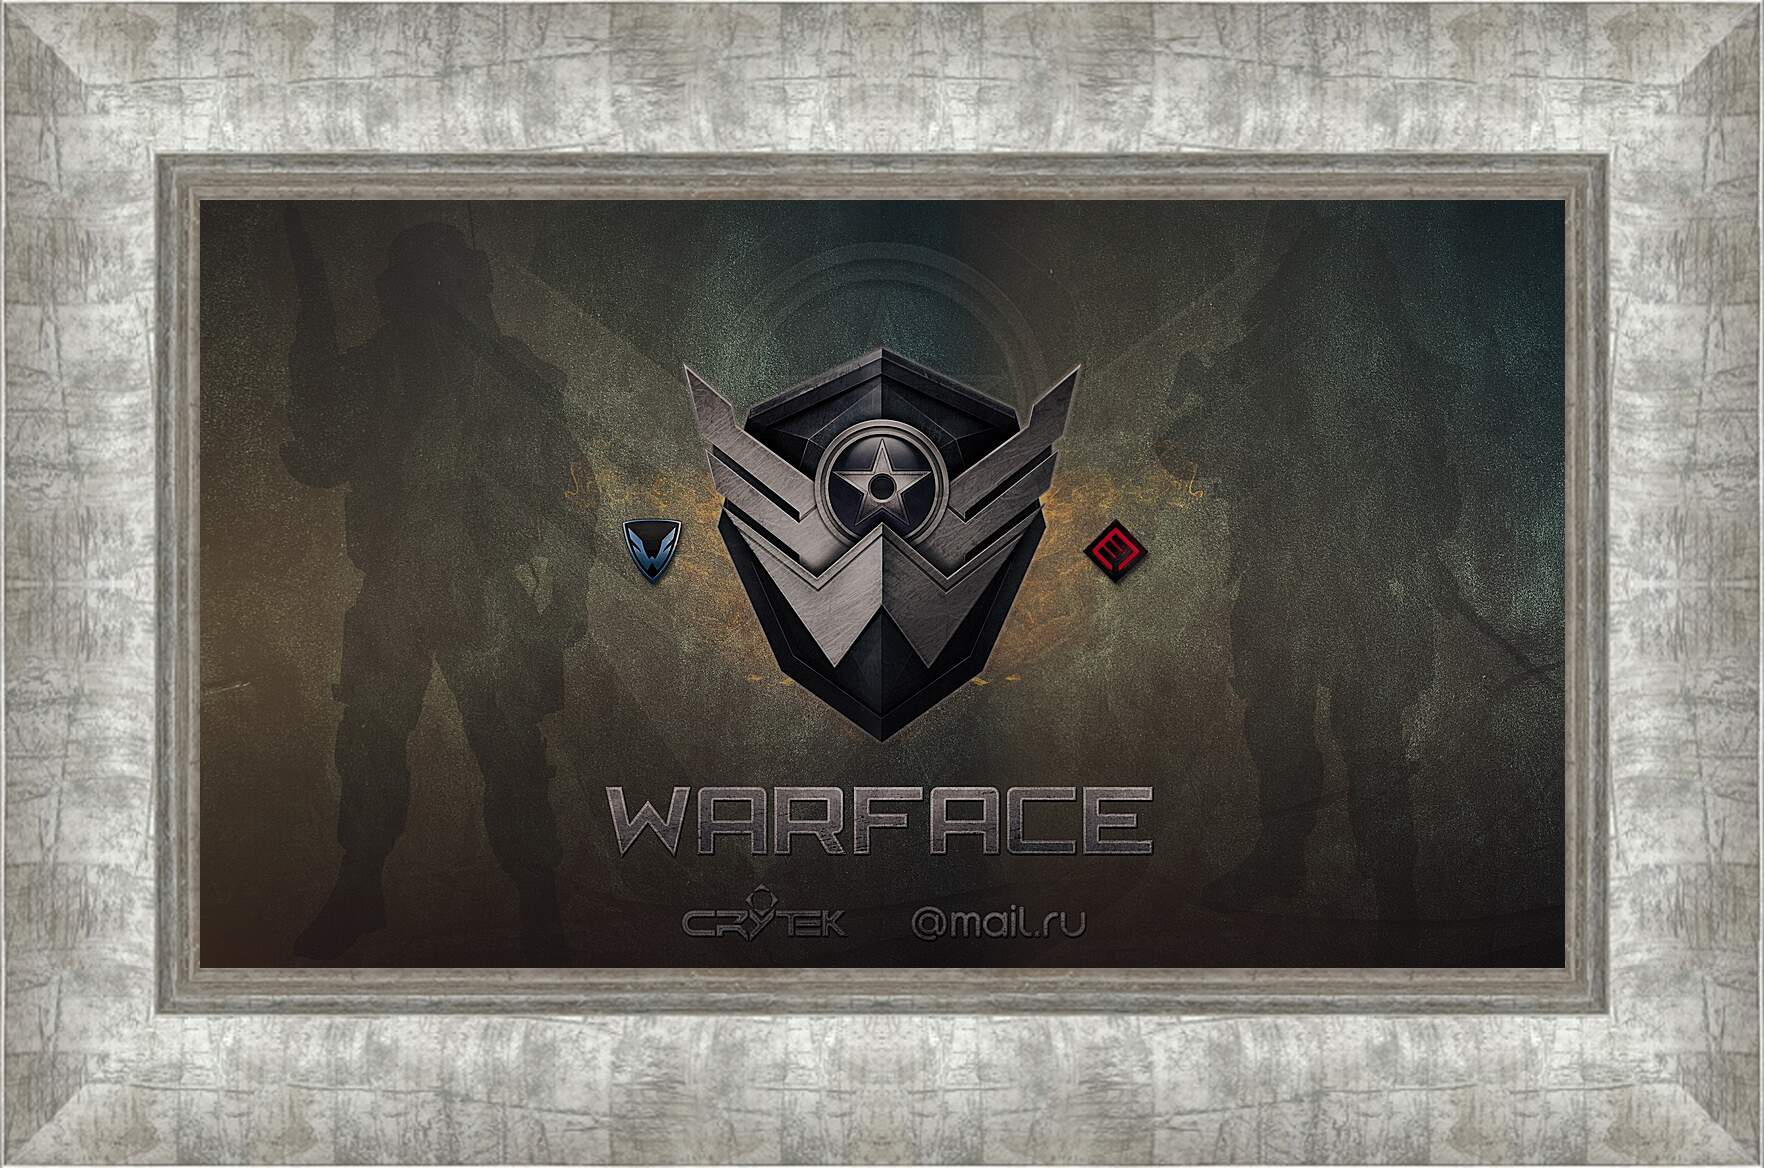 Картина в раме - wf, warface, logo
